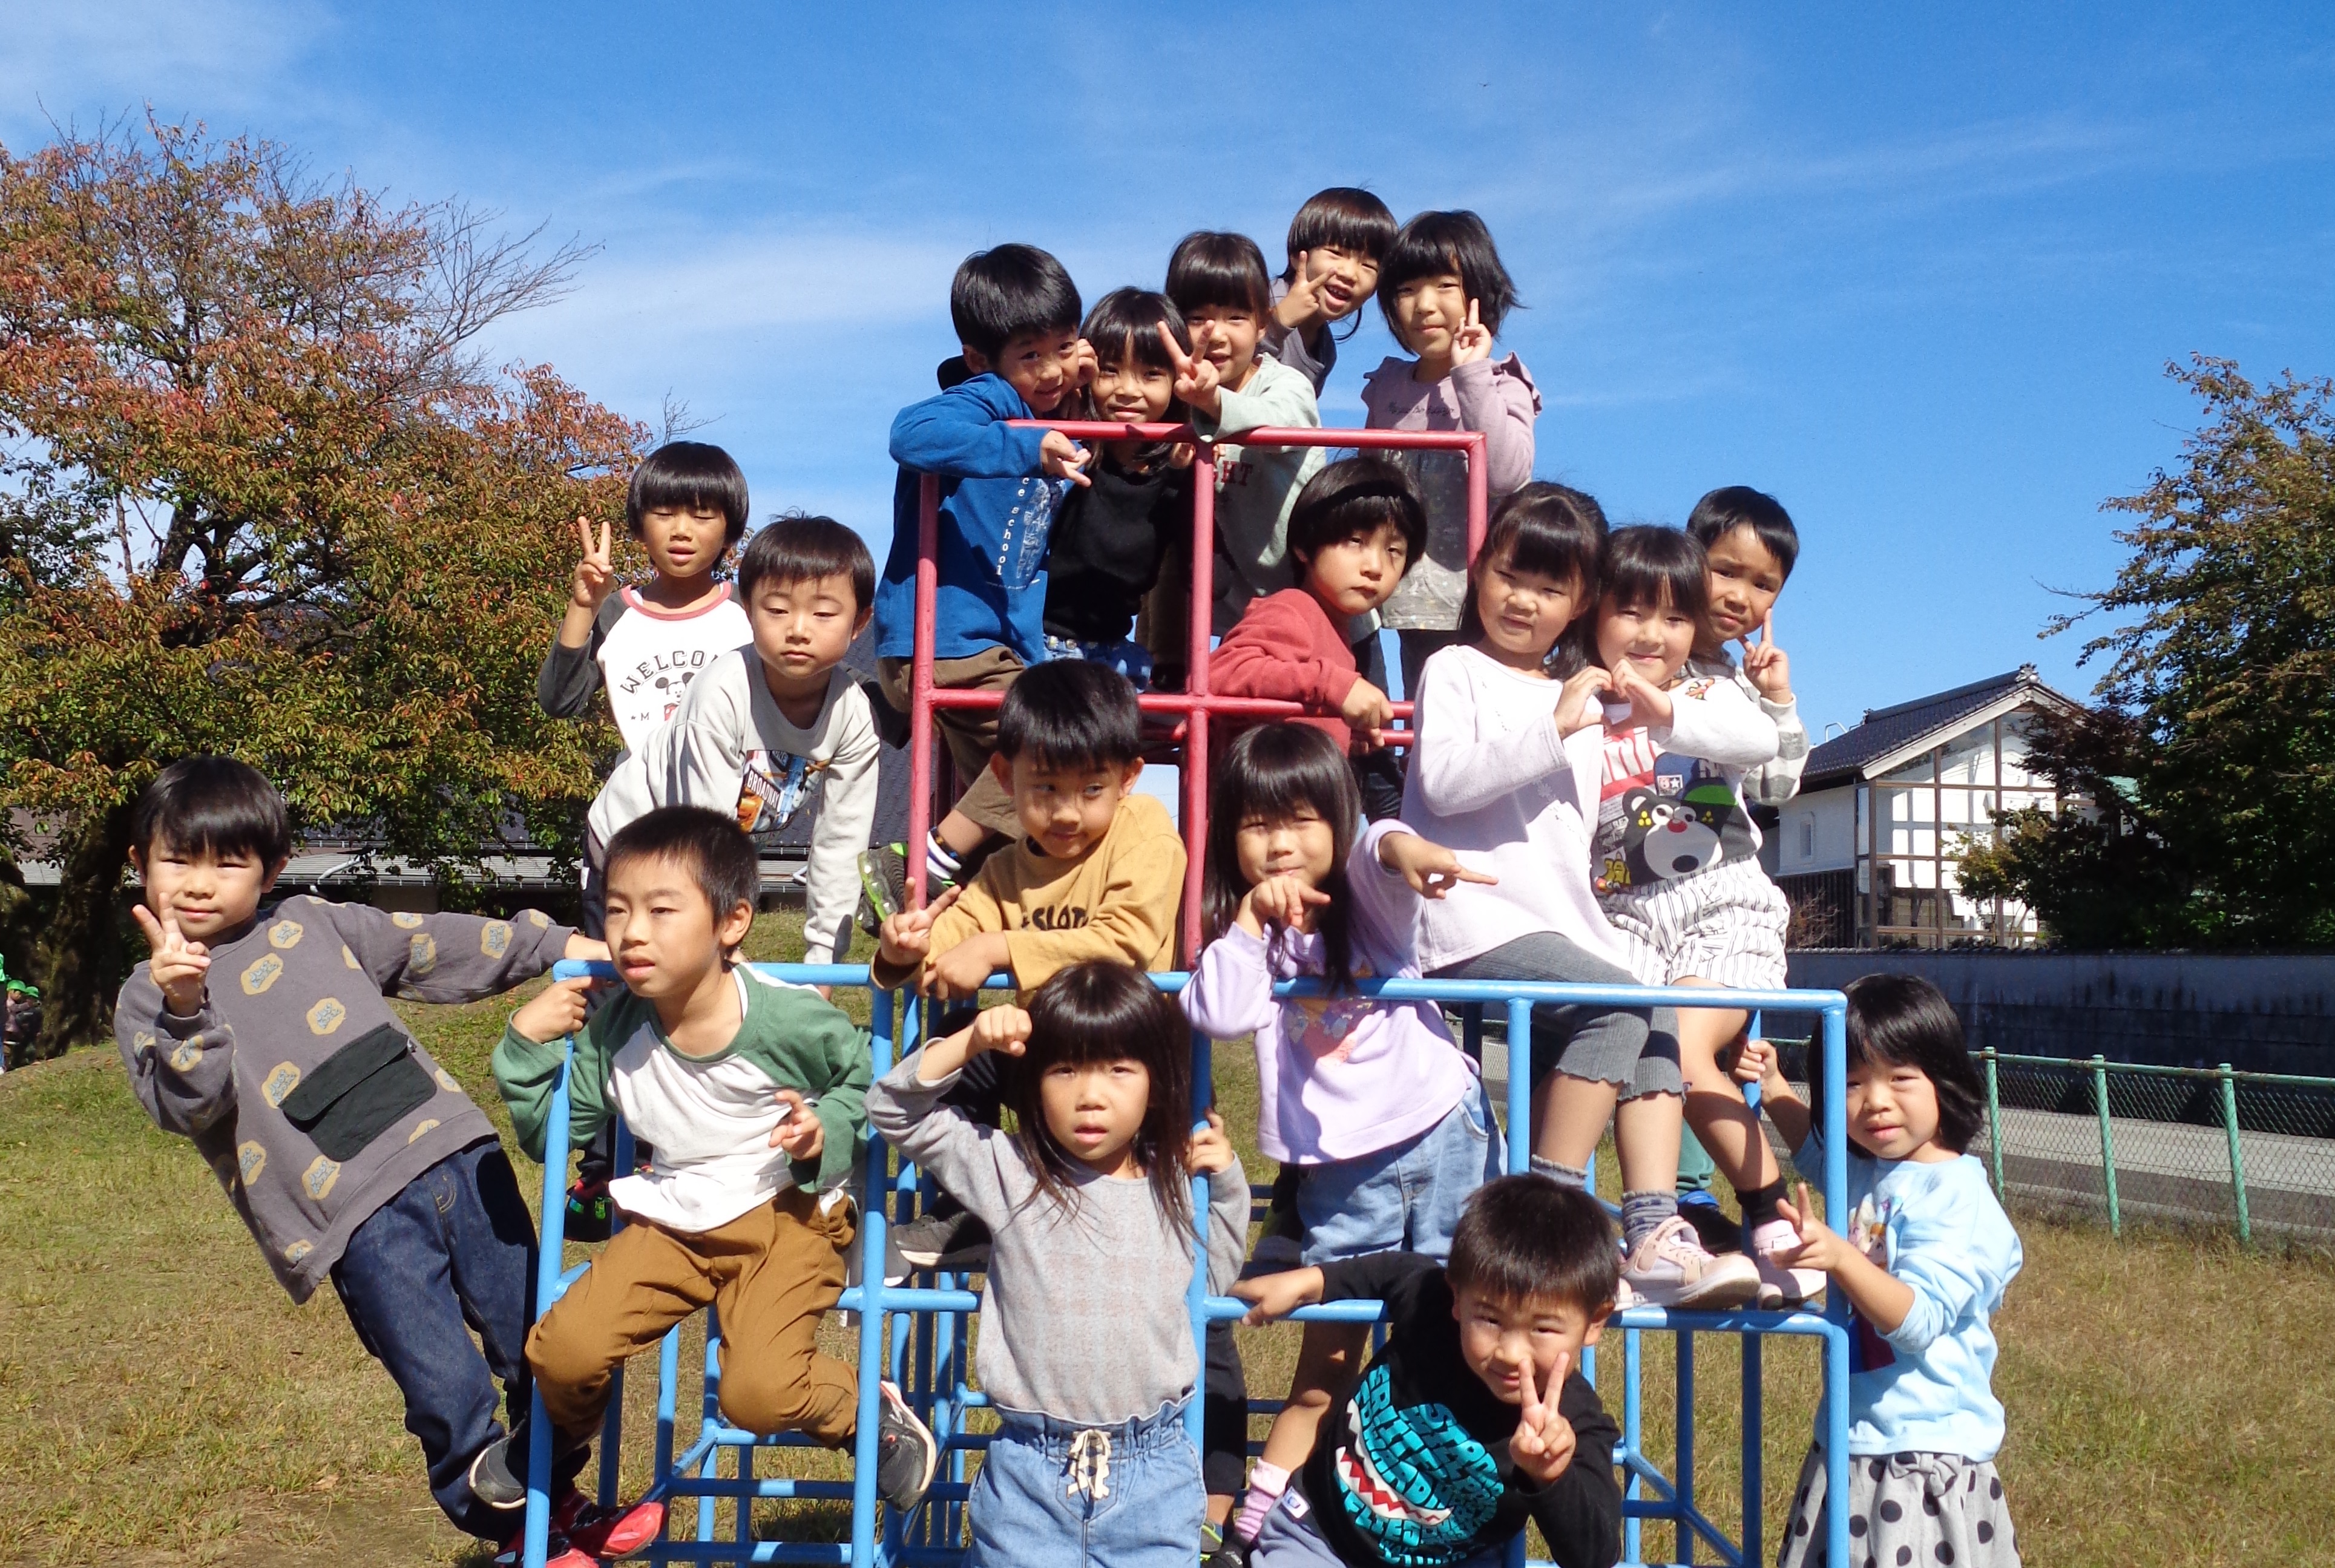 【プロジェクト型】子どもたちが安全・安心に遊べるよう公園遊具等の整備